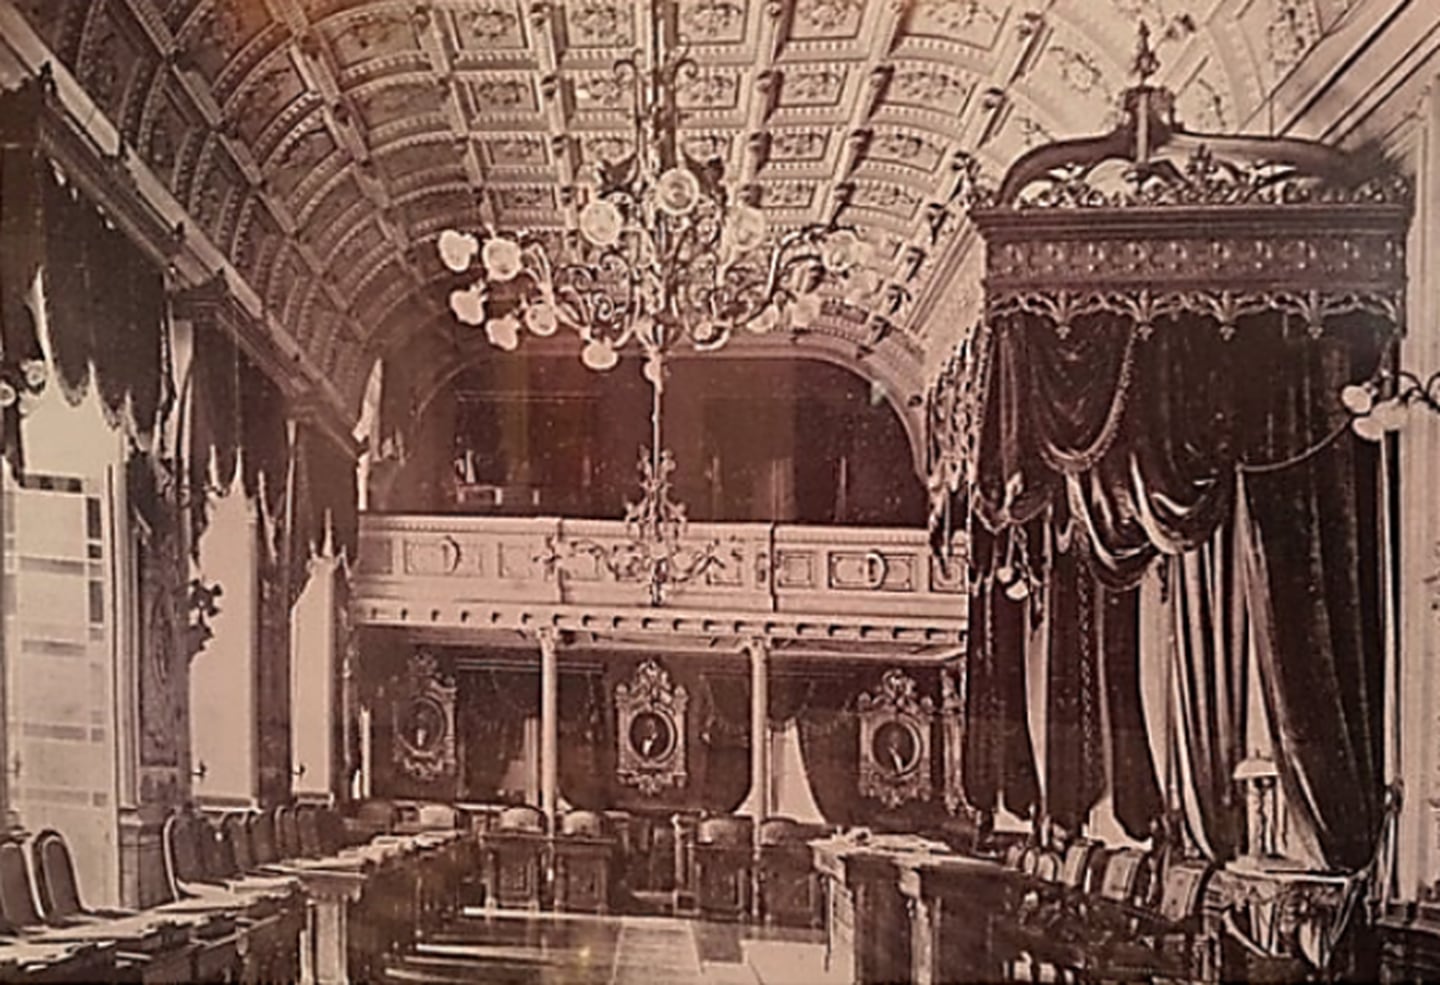 Vista del imponente Salón de Sesiones del Palacio Nacional en San José (construido a inicios de la década de 1850), donde se aprecian los retratos de los gobernantes de Costa Rica colgando en las paredes